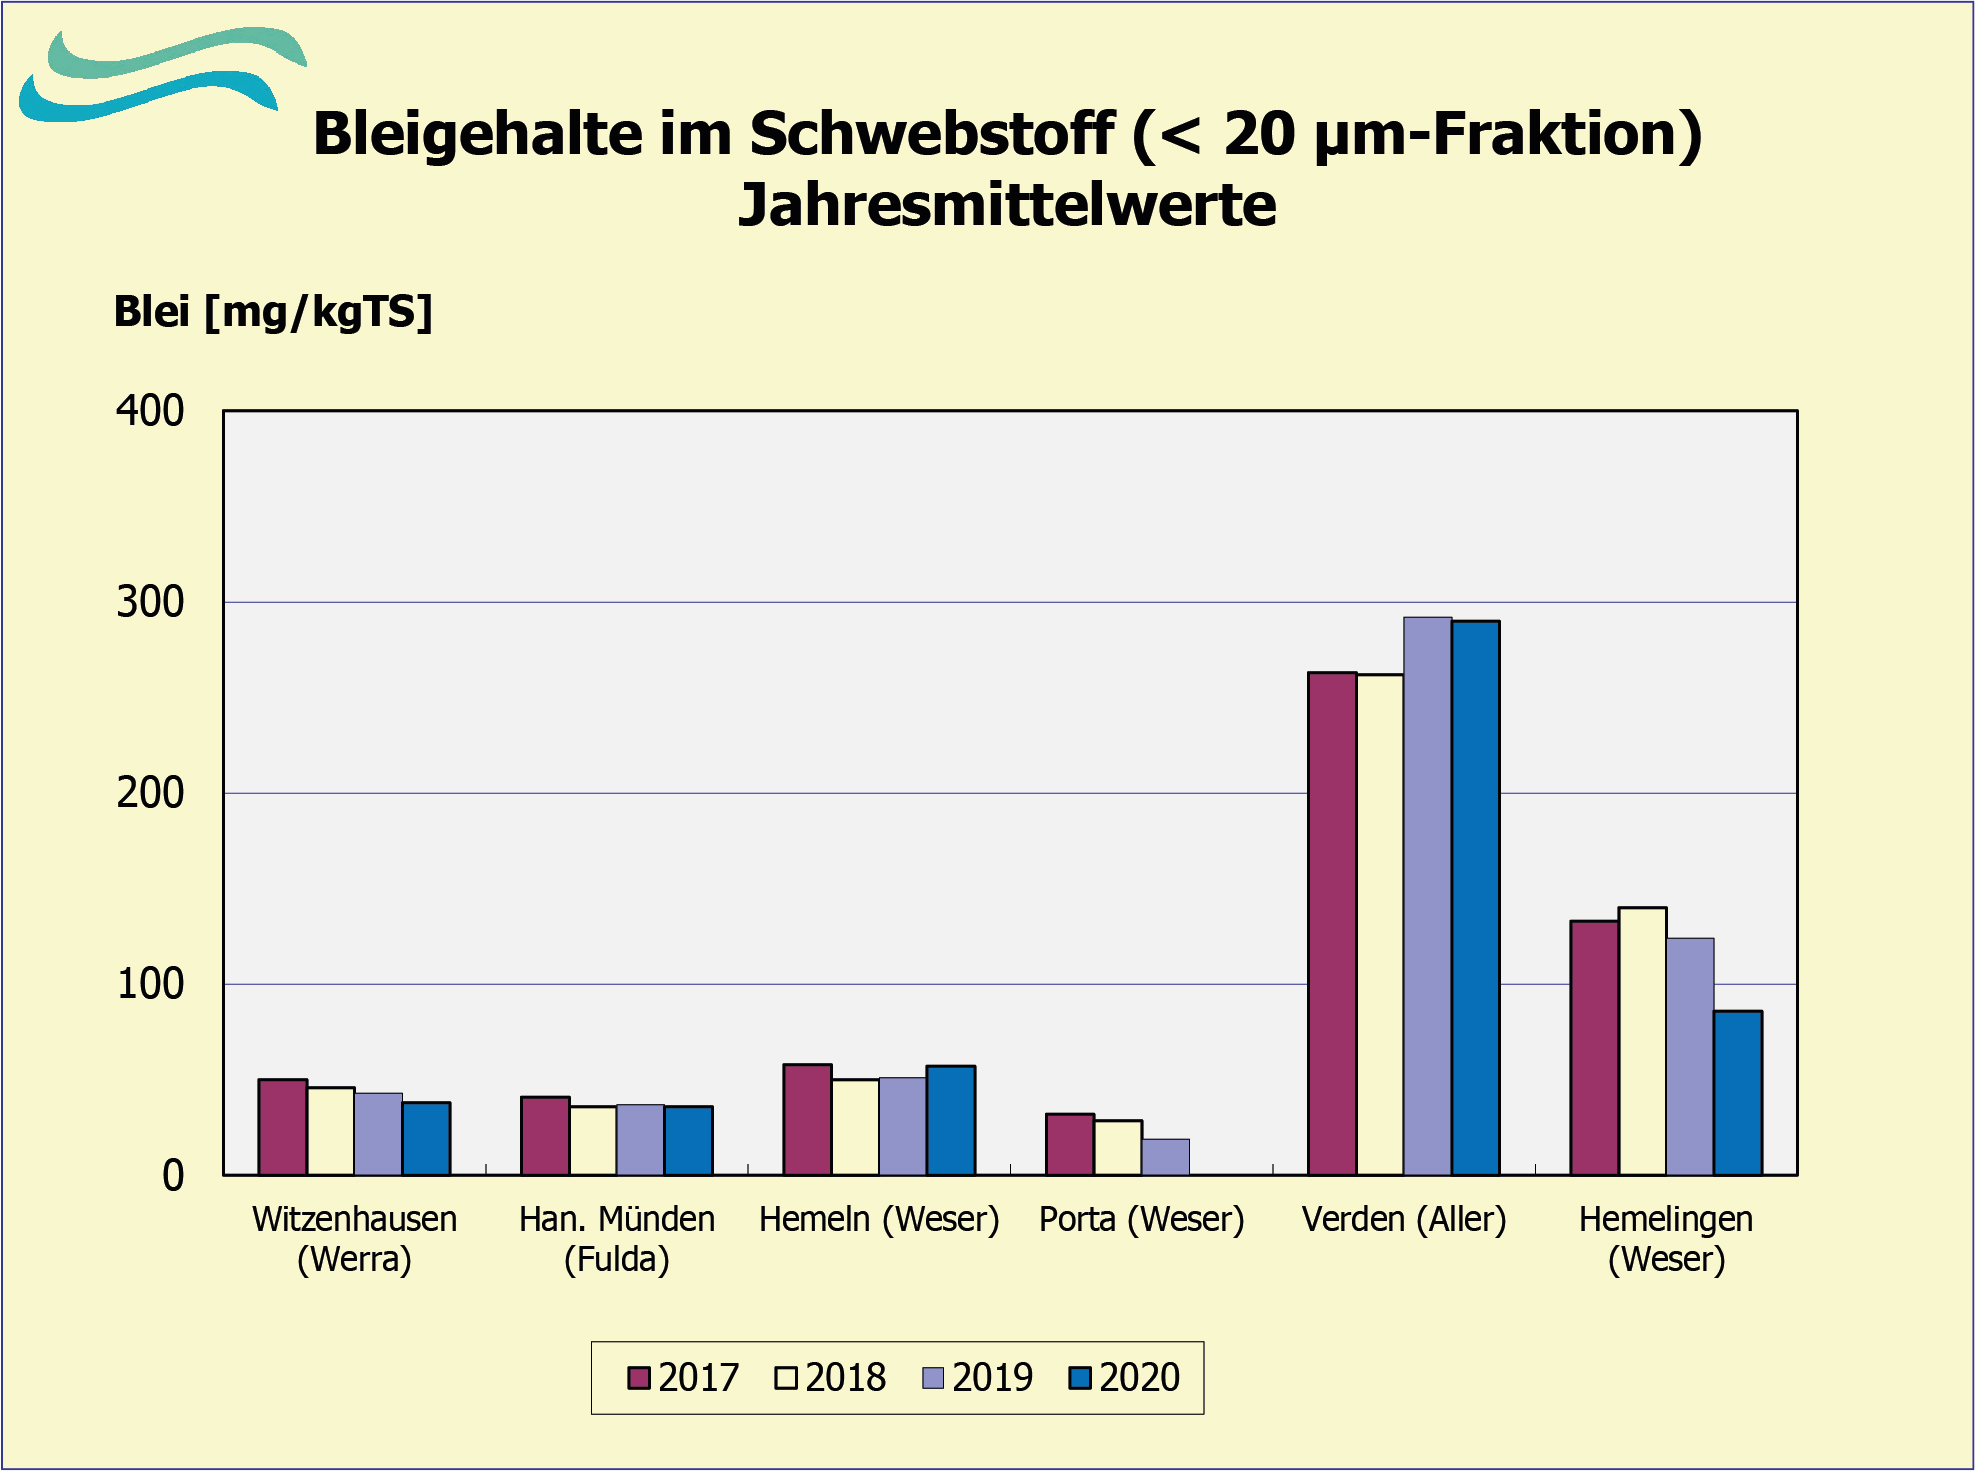 Bleibelastung in Schwebstoffen 2017 bis 2020 (FGG Weser)